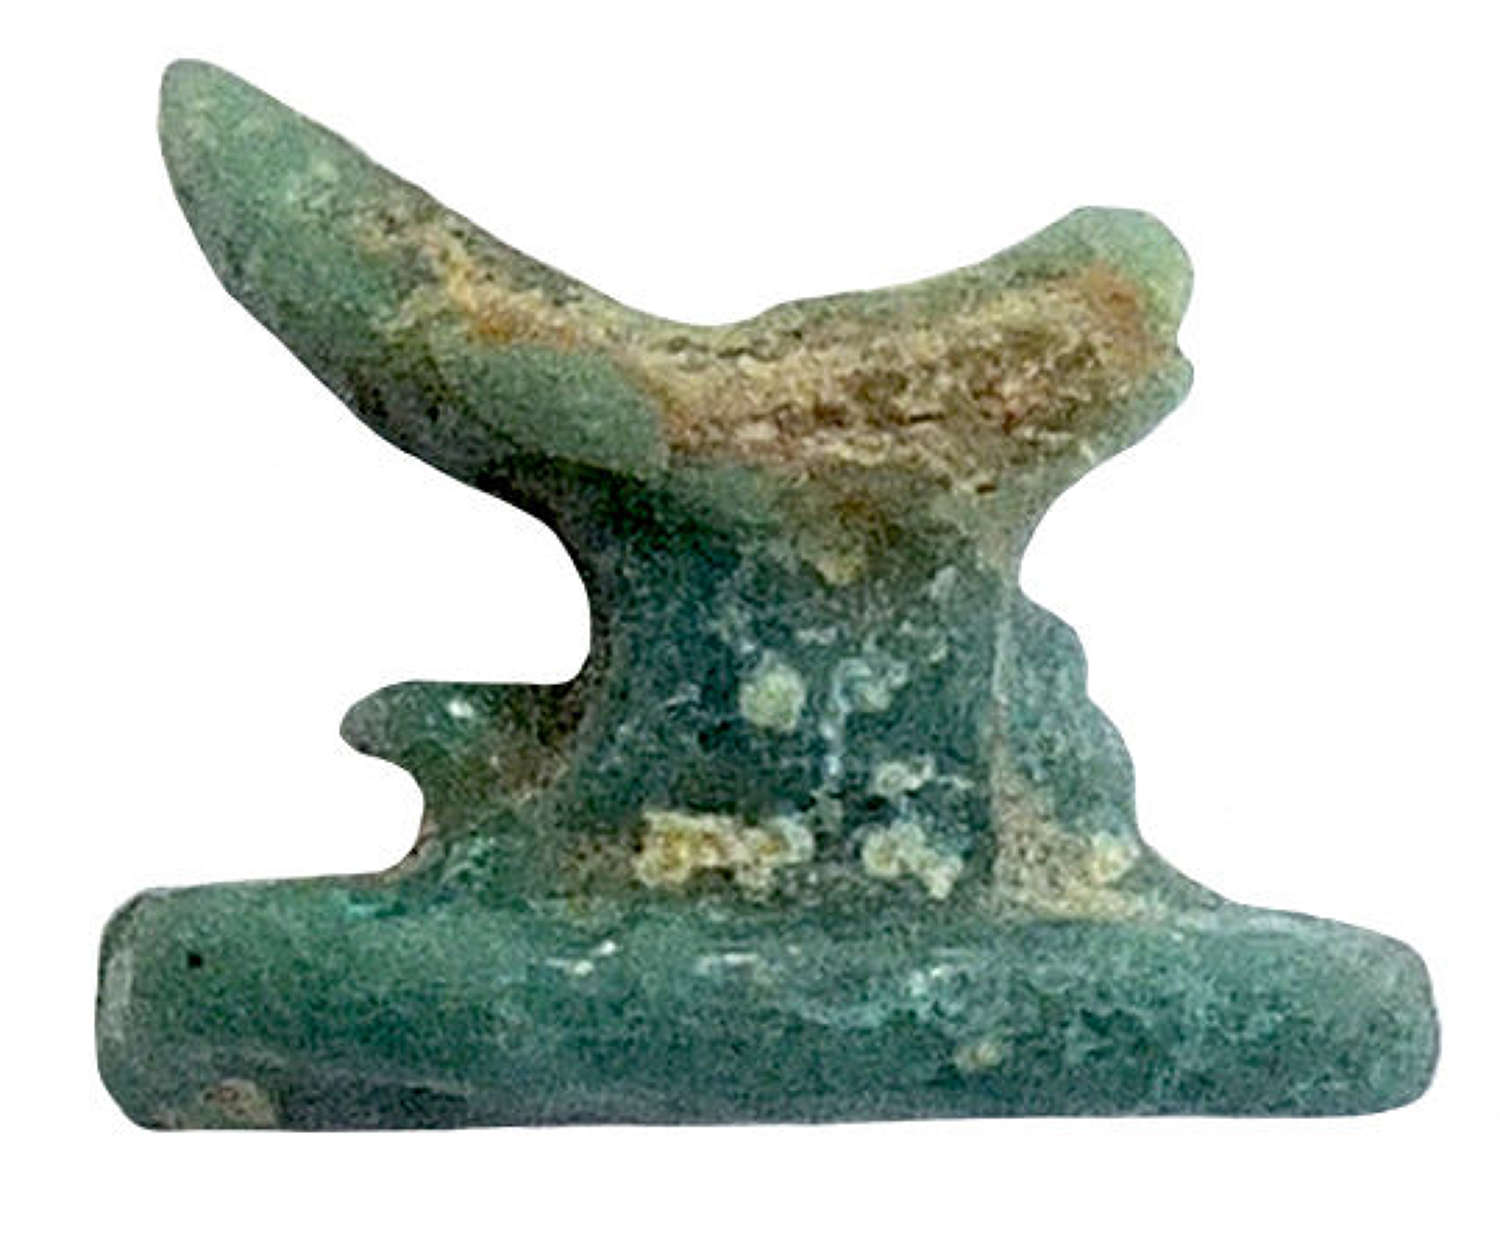 A diminutive Egyptian faience headrest amulet, c. 600 B.C.